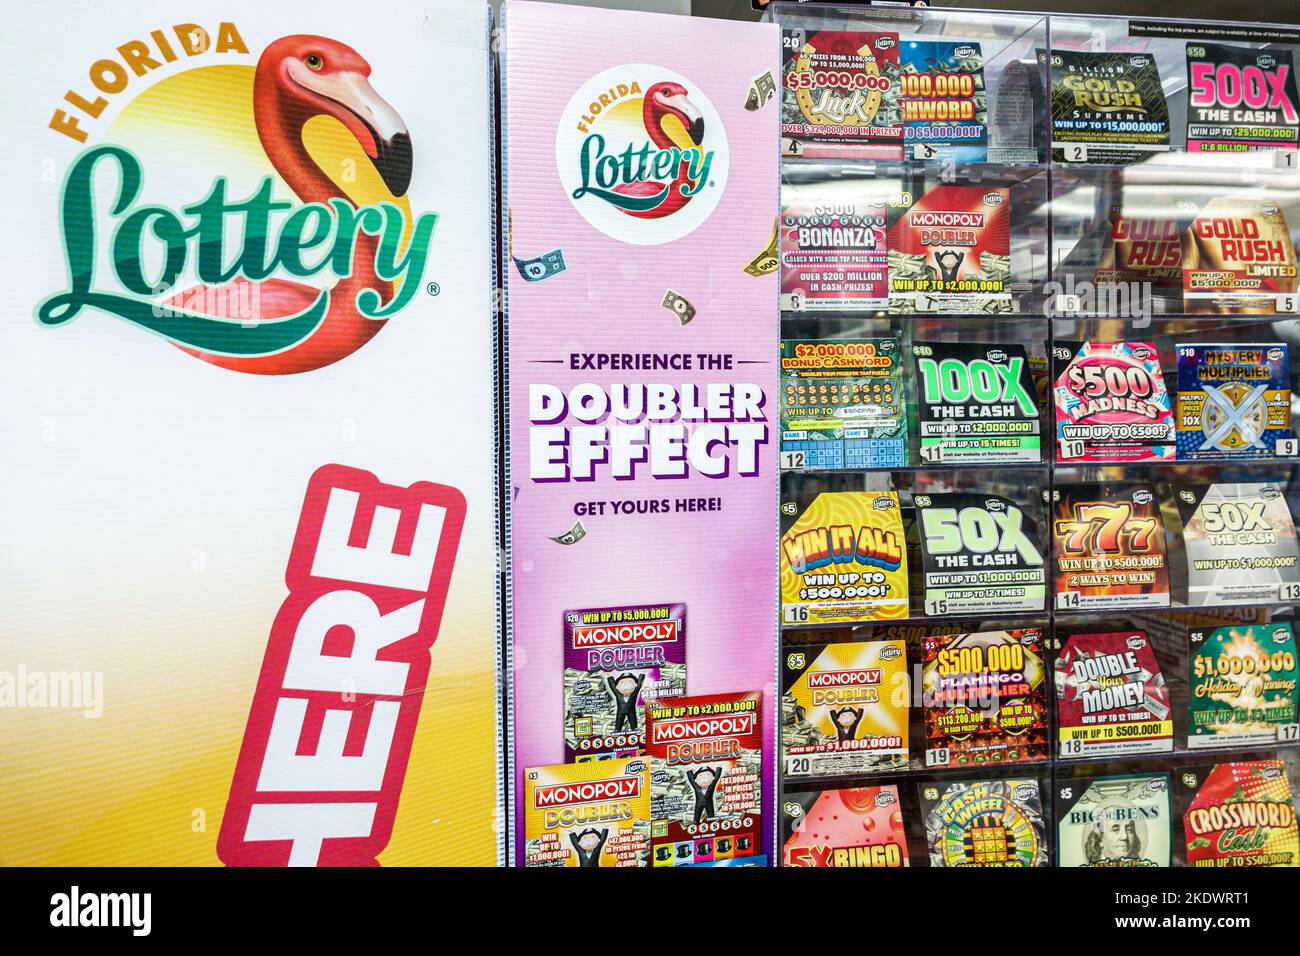 Miami Beach Florida, North Beach Collins Avenue, Christal Food Store minimarket bodega drogheria, Florida Lottery fornitore promozione display Foto Stock